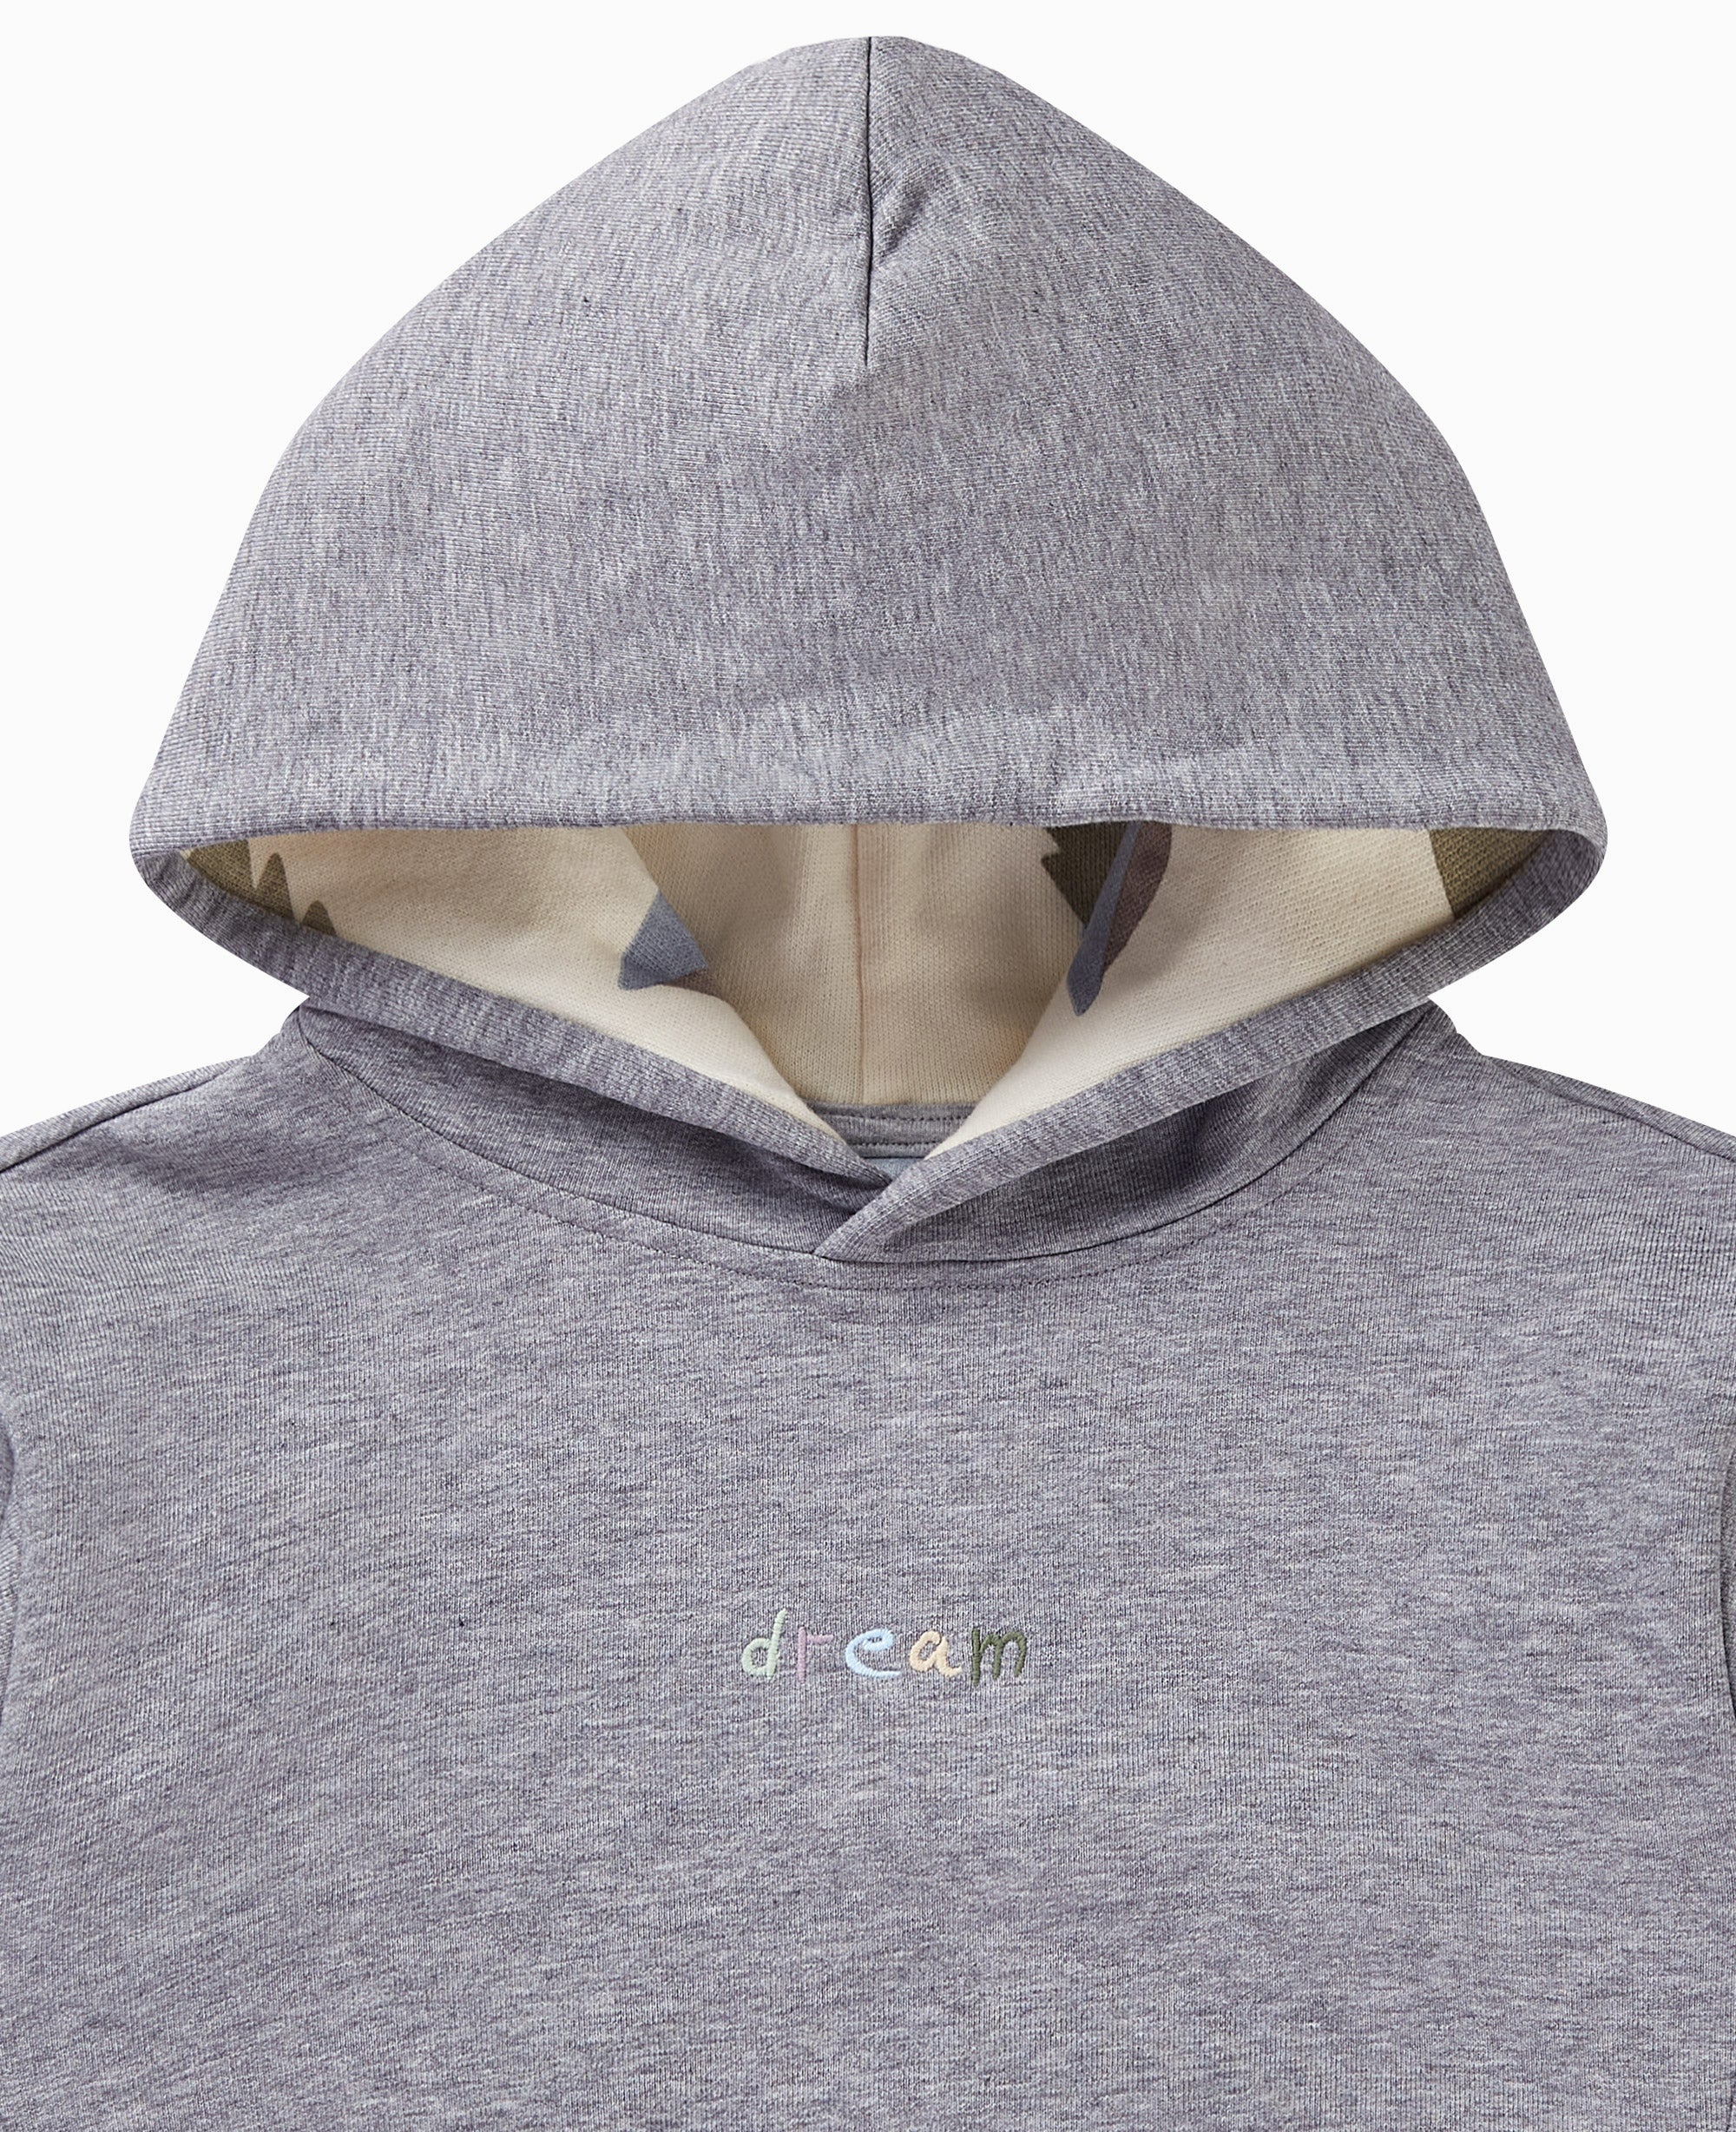 French Terry Hooded Sweatshirt - Slate Grey